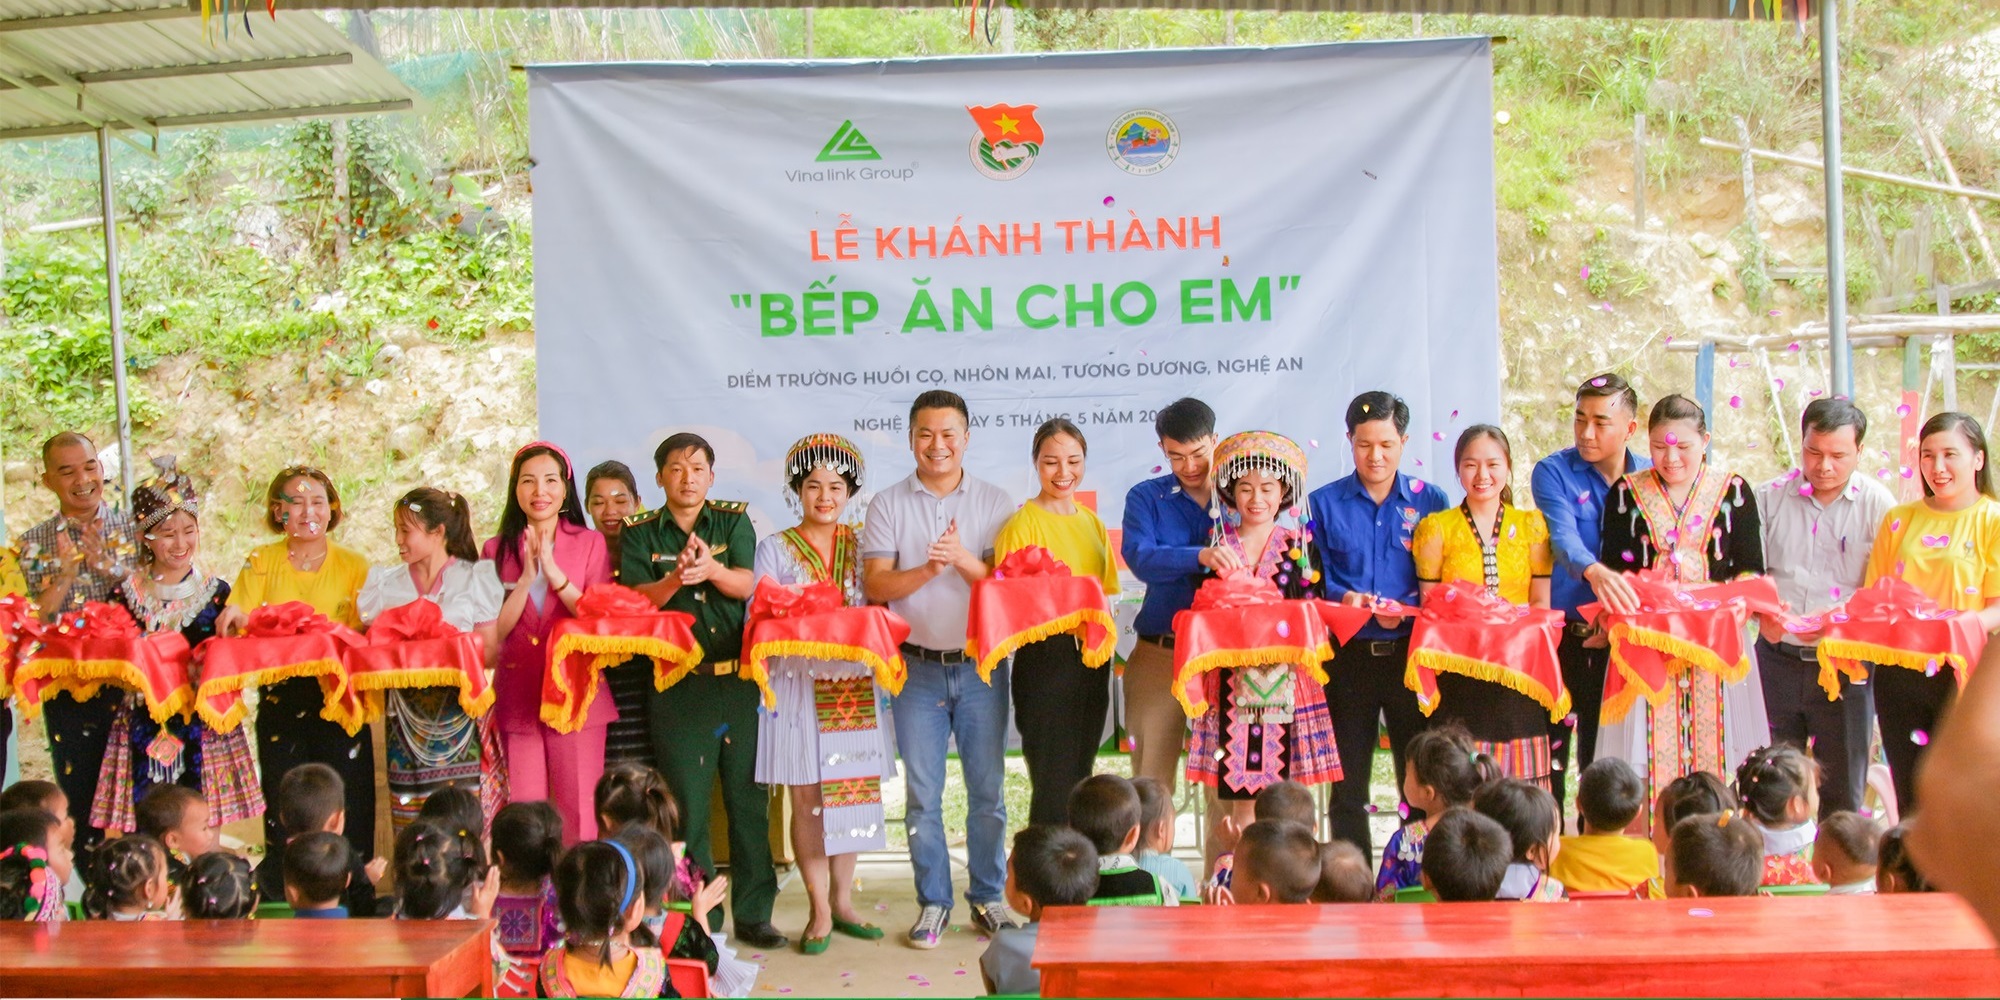 Vinalink Group tổ chức Lễ khánh thành “Bếp ăn cho em” điểm trường Huồi Cọ, Nhôn Mai, Tương Dương, Nghệ An